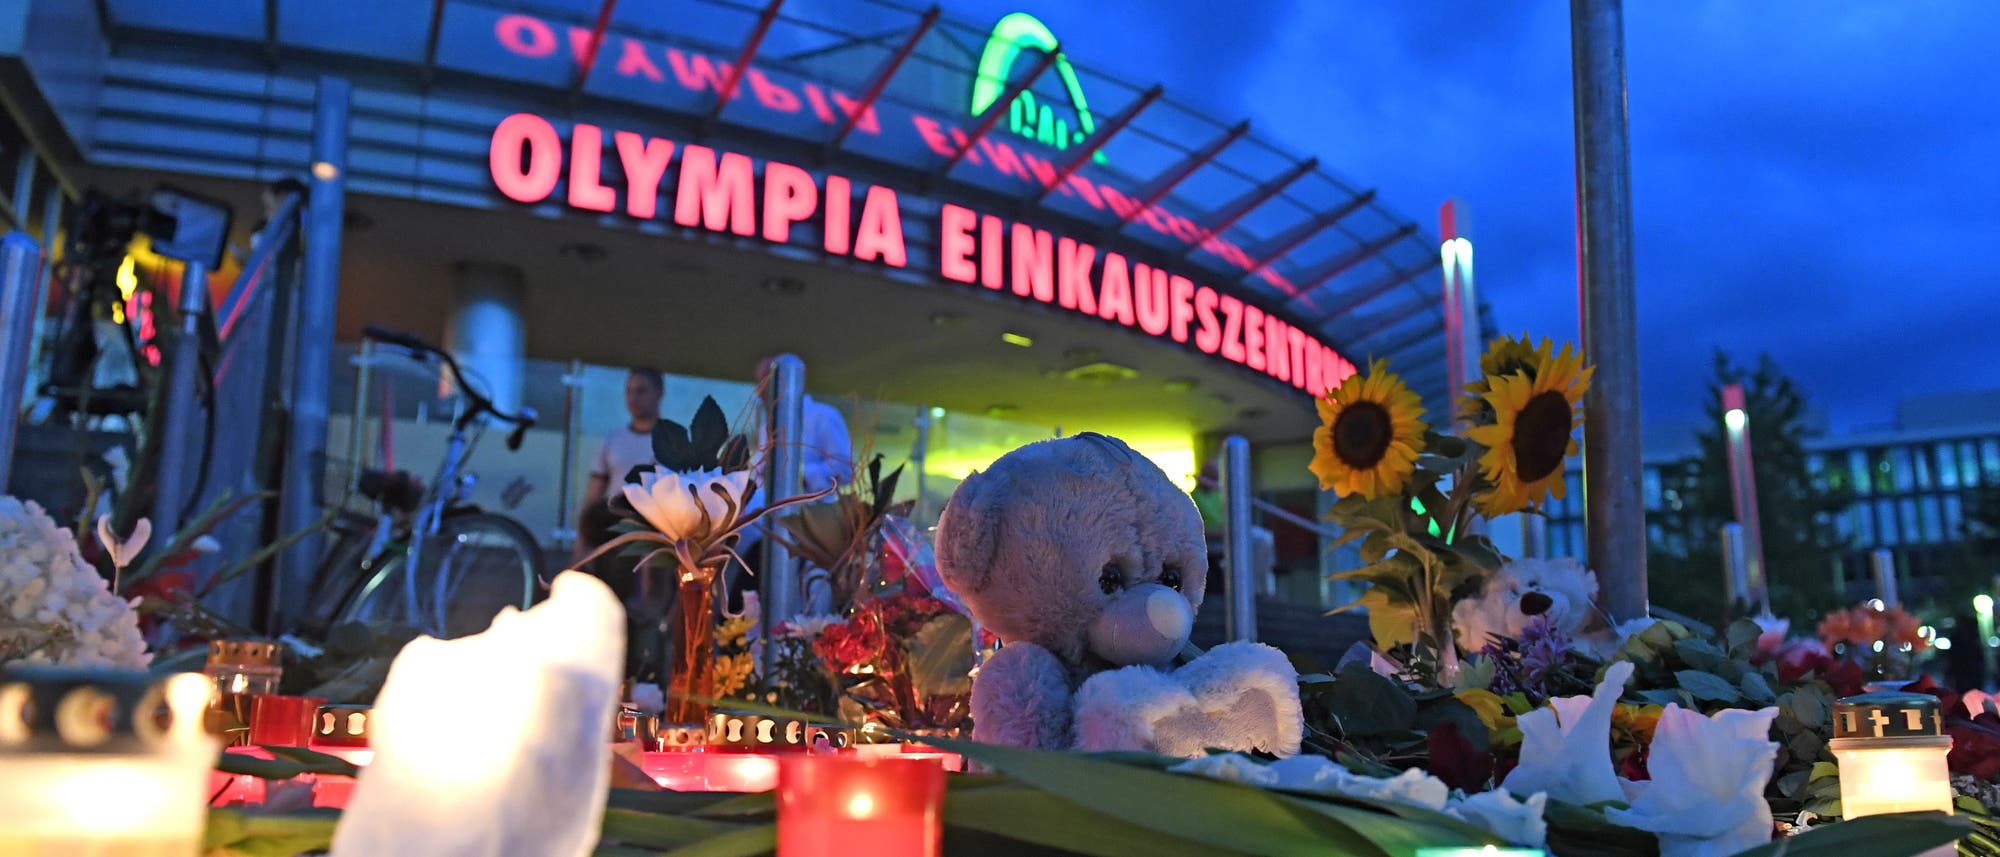 Ort der Trauer am Olympiaeinkaufszentrum in München